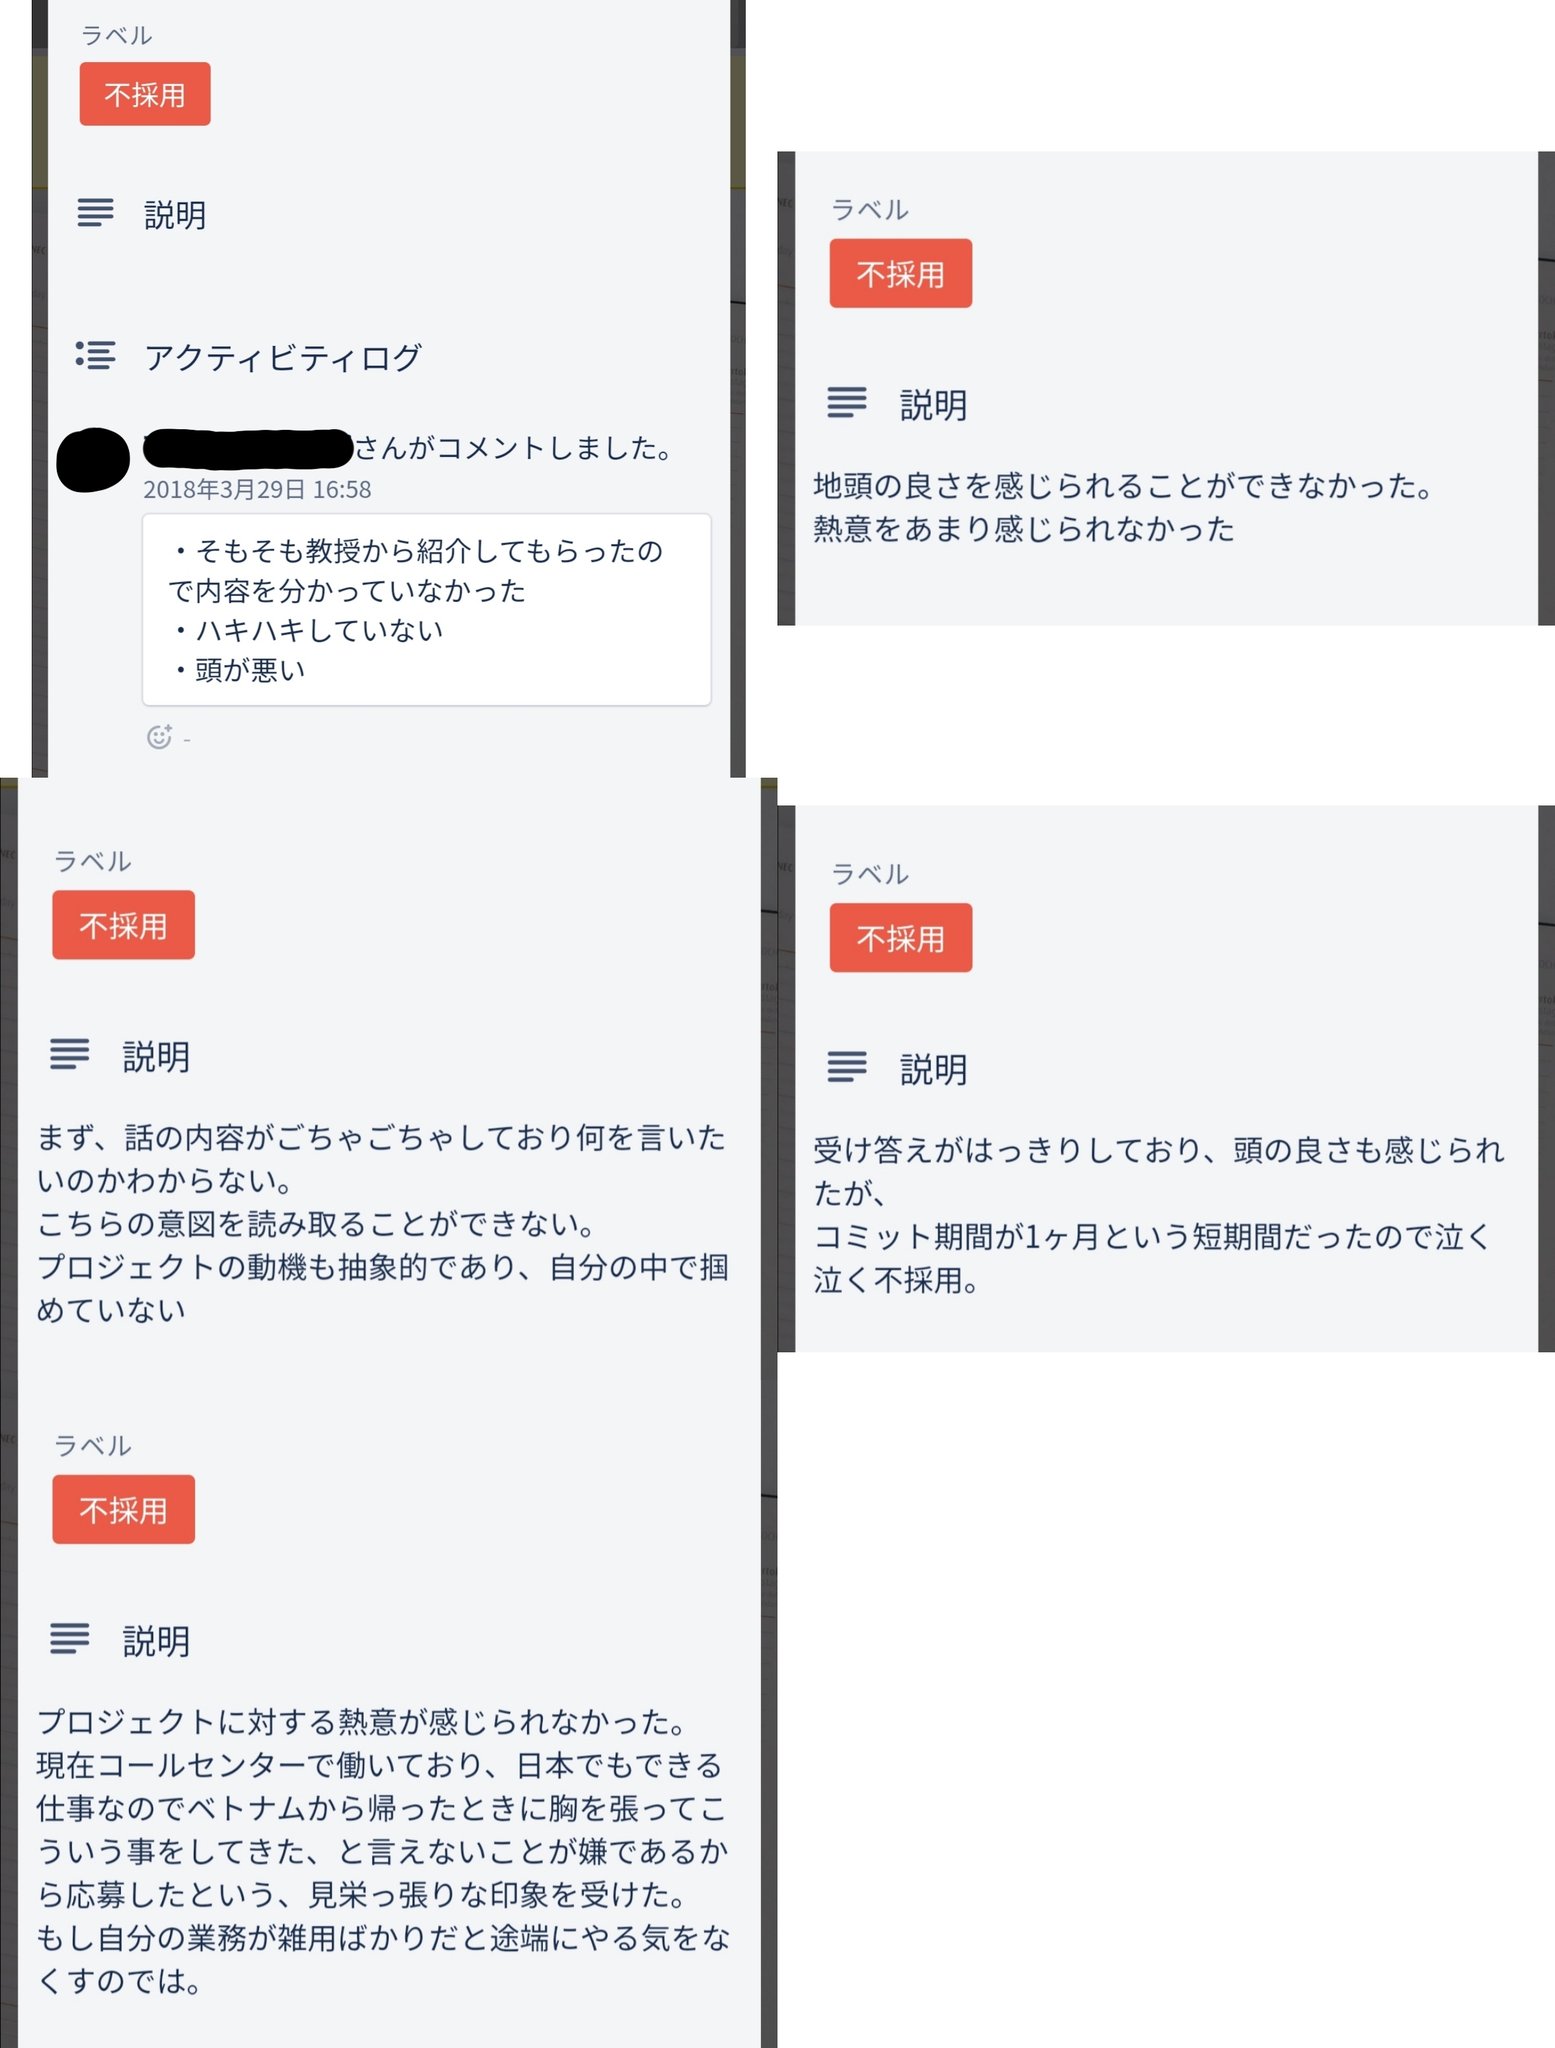 話題 日本企業 就活タスク管理ツール Trello を公開設定のまま利用 個人情報 就活生の顔写真 住所 銀行口座など がダダ漏れに Share News Japan